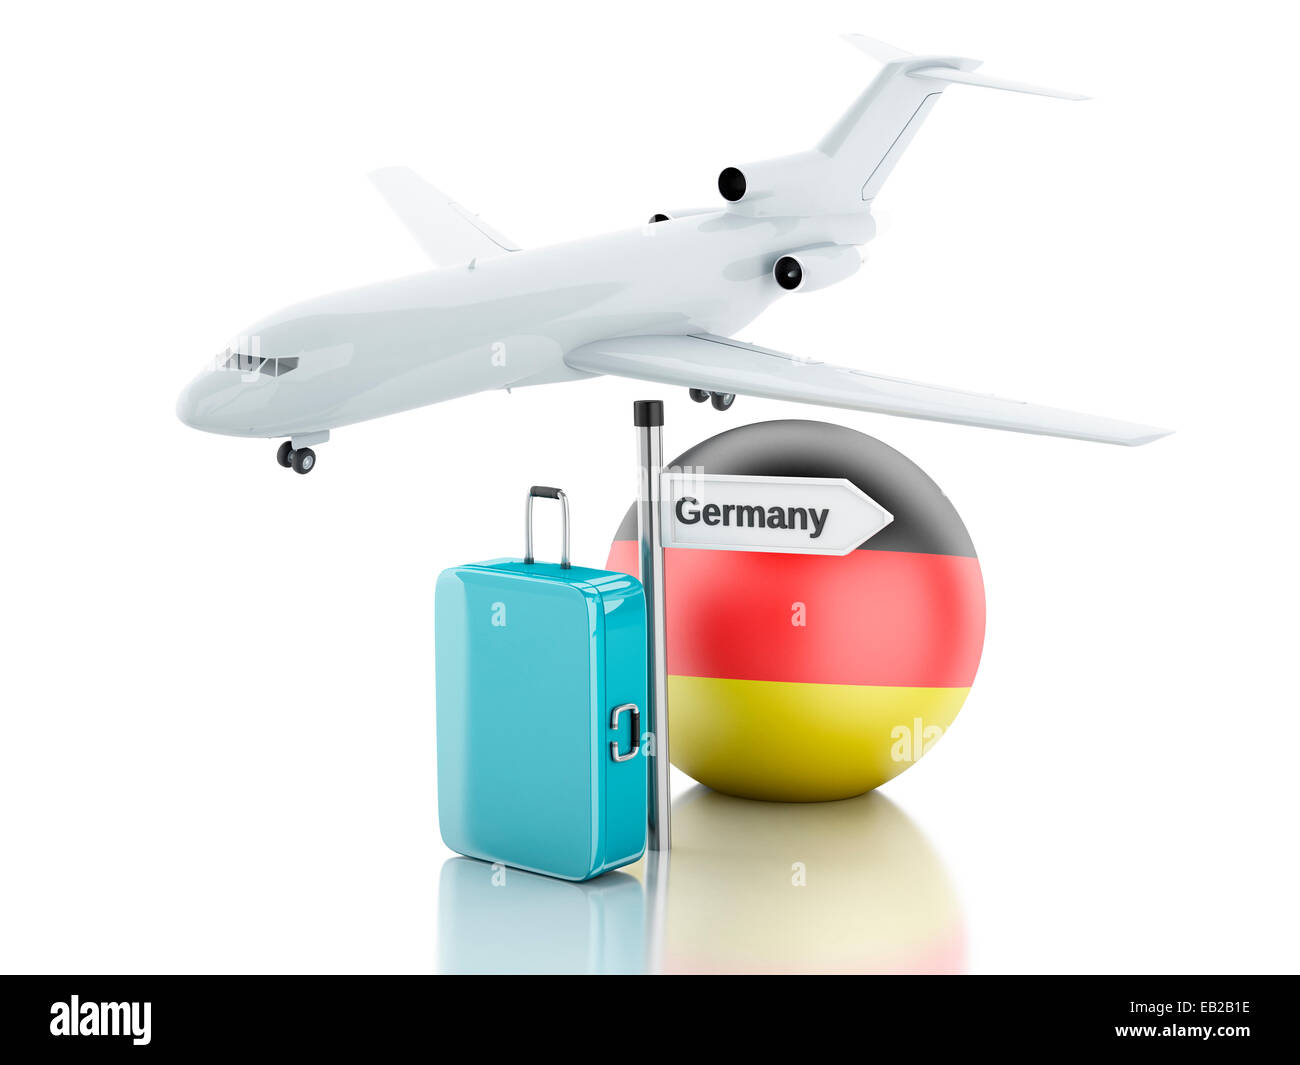 Immagine del concetto di viaggio. Valigia, piano e Germania icona bandiera. 3d'illustrazione su sfondo bianco Foto Stock